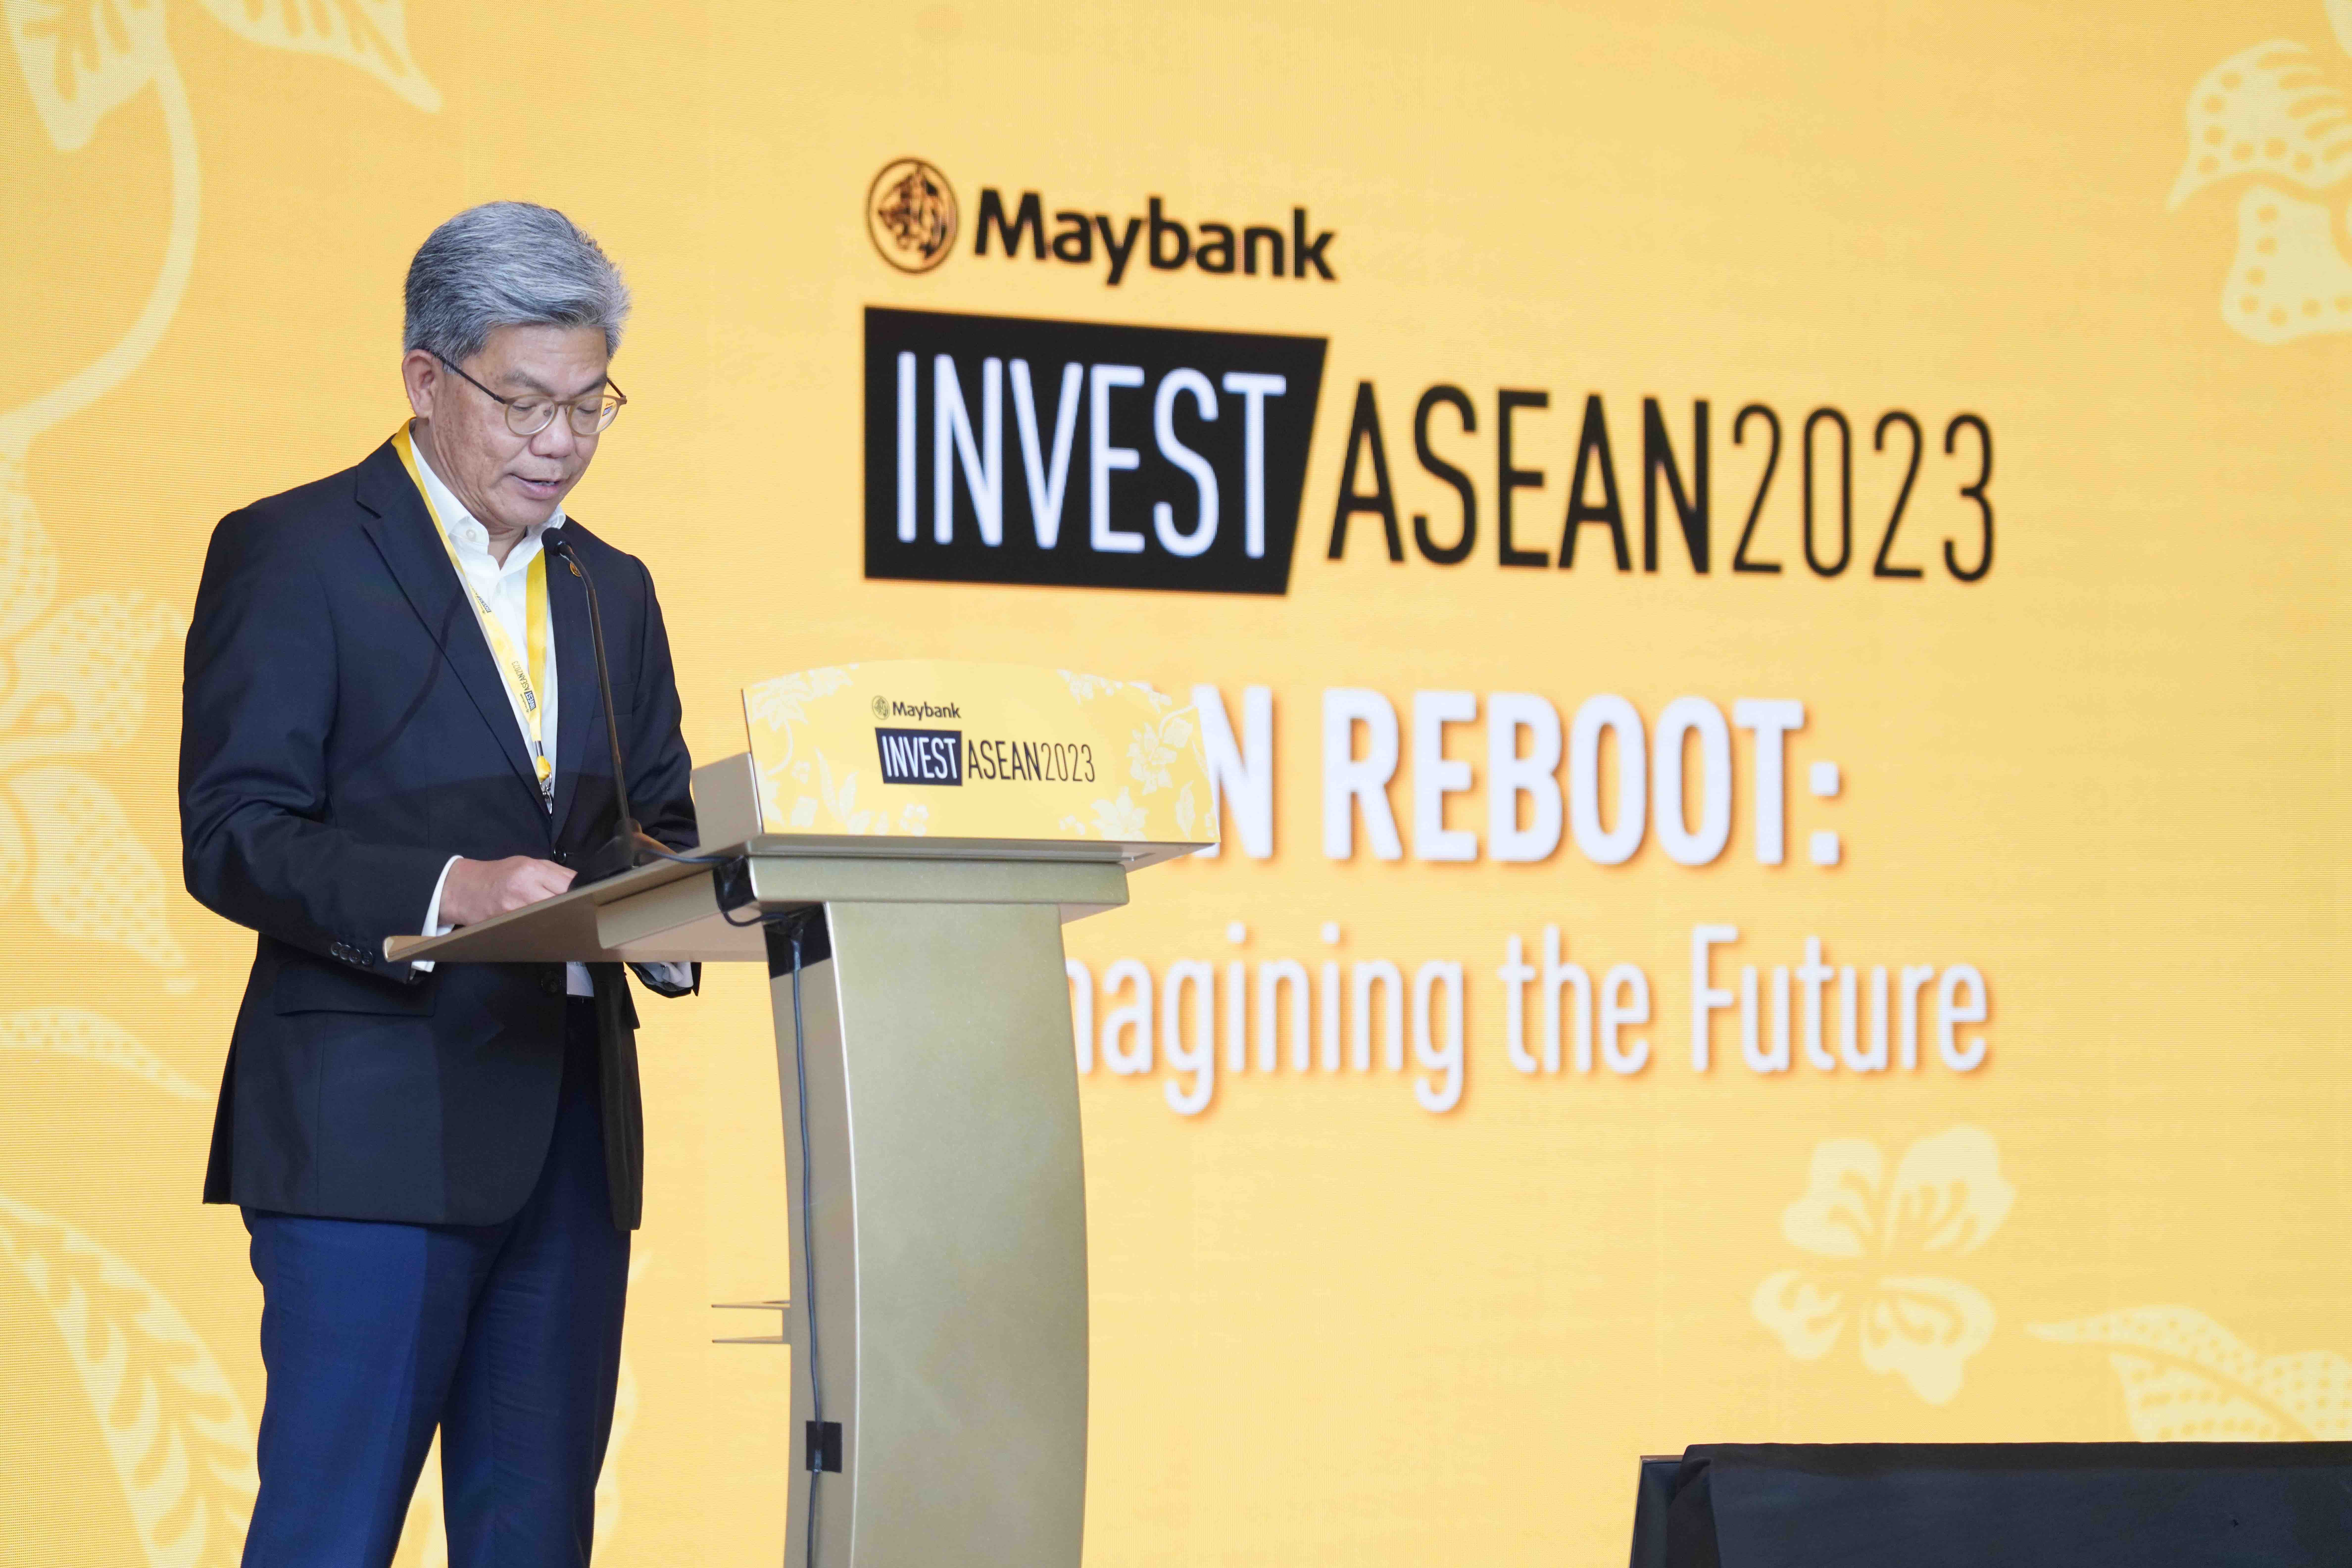 Chủ tịch ki&ecirc;m Tổng gi&aacute;m đốc Tập đo&agrave;n Maybank, &ocirc;ng Dato&rsquo; Khairussaleh Ramli tại sự kiện Maybank's Invest ASEAN 2023.